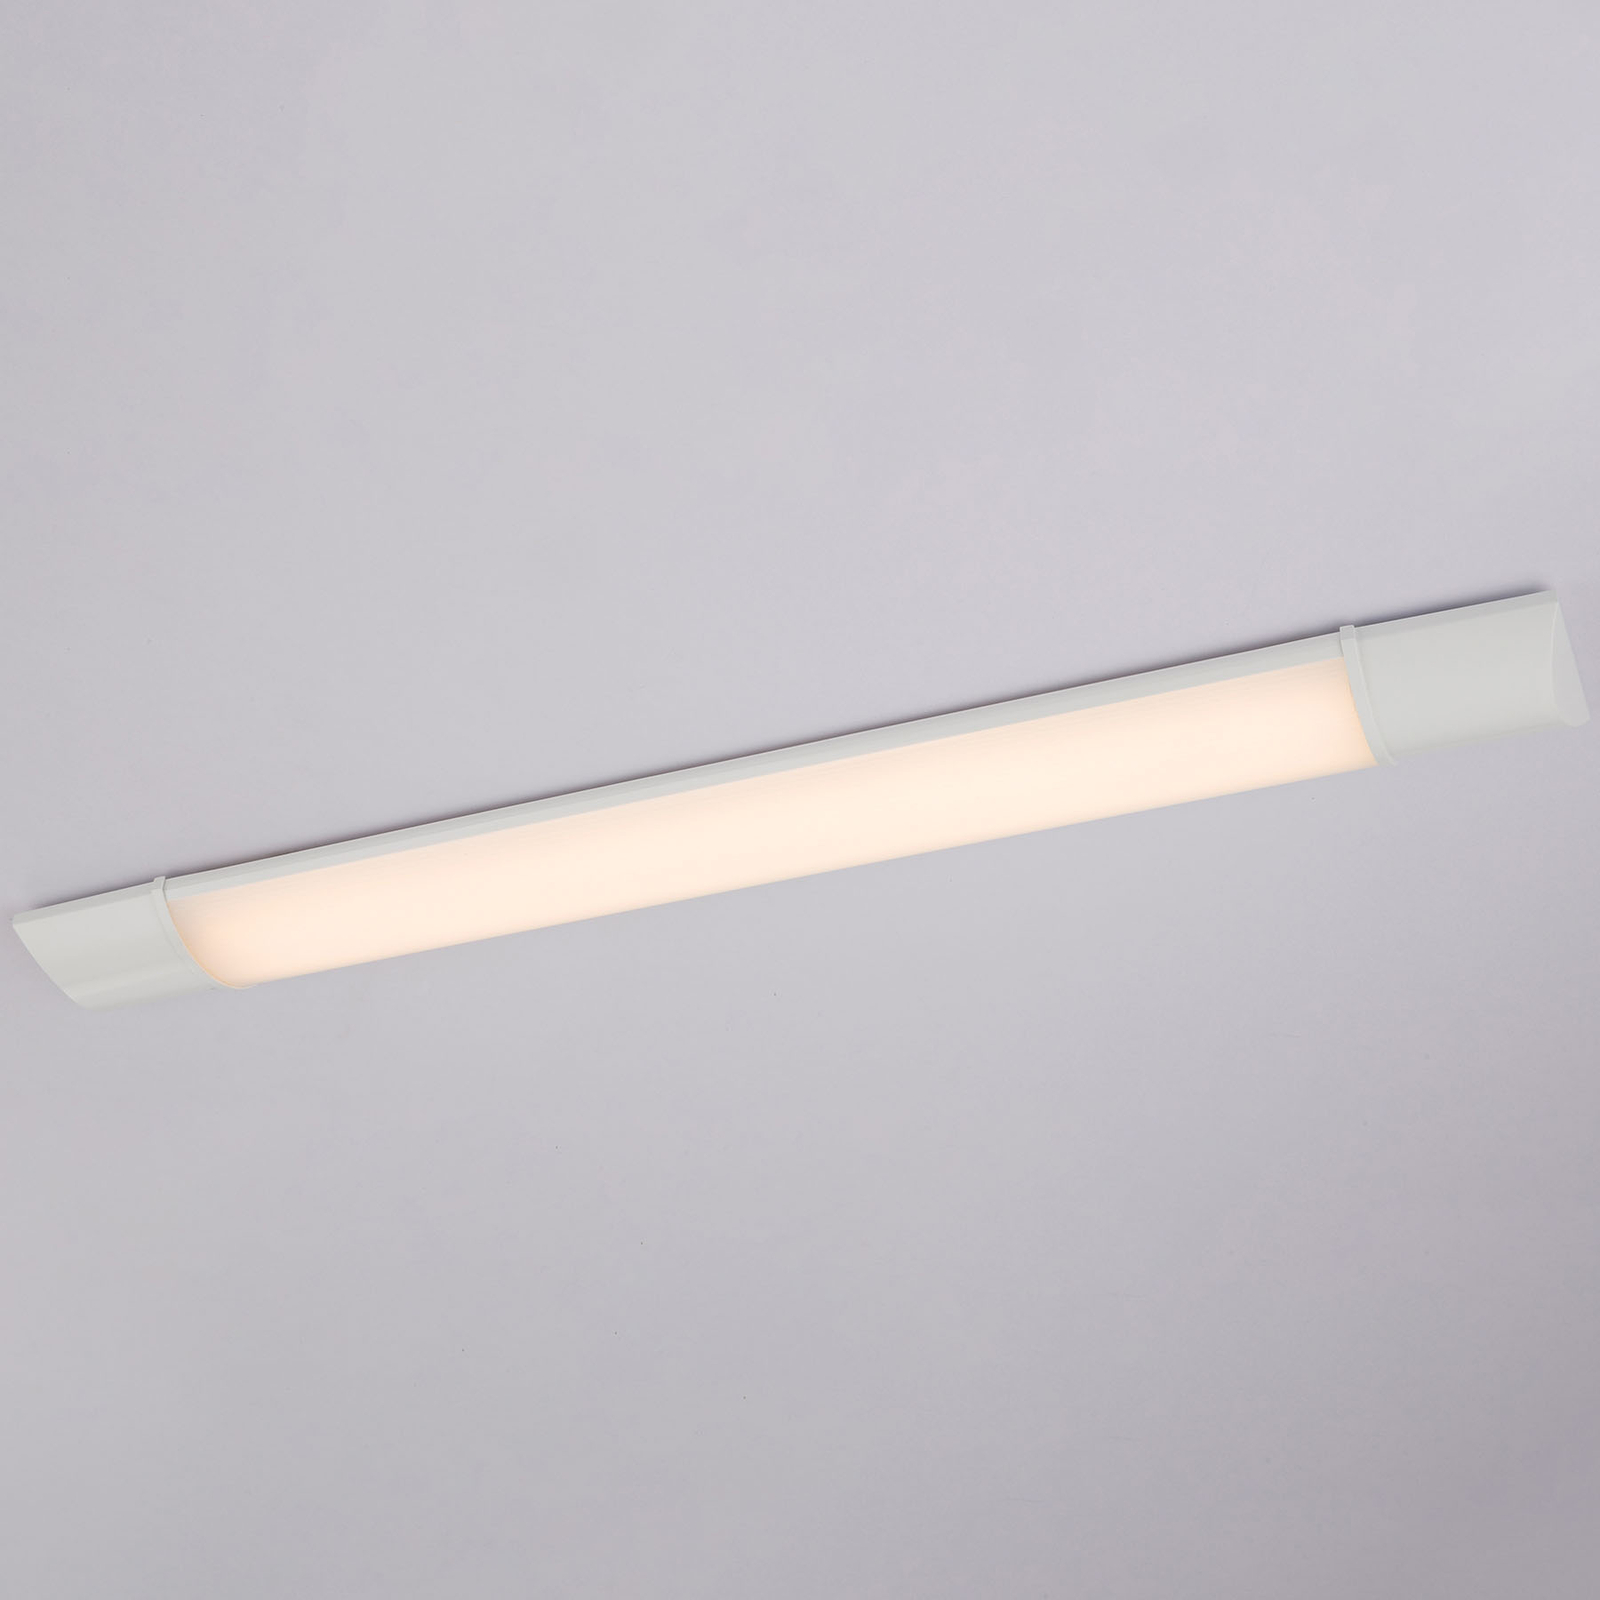 LED-Unterbauleuchte Obara, IP20, 60 cm lang